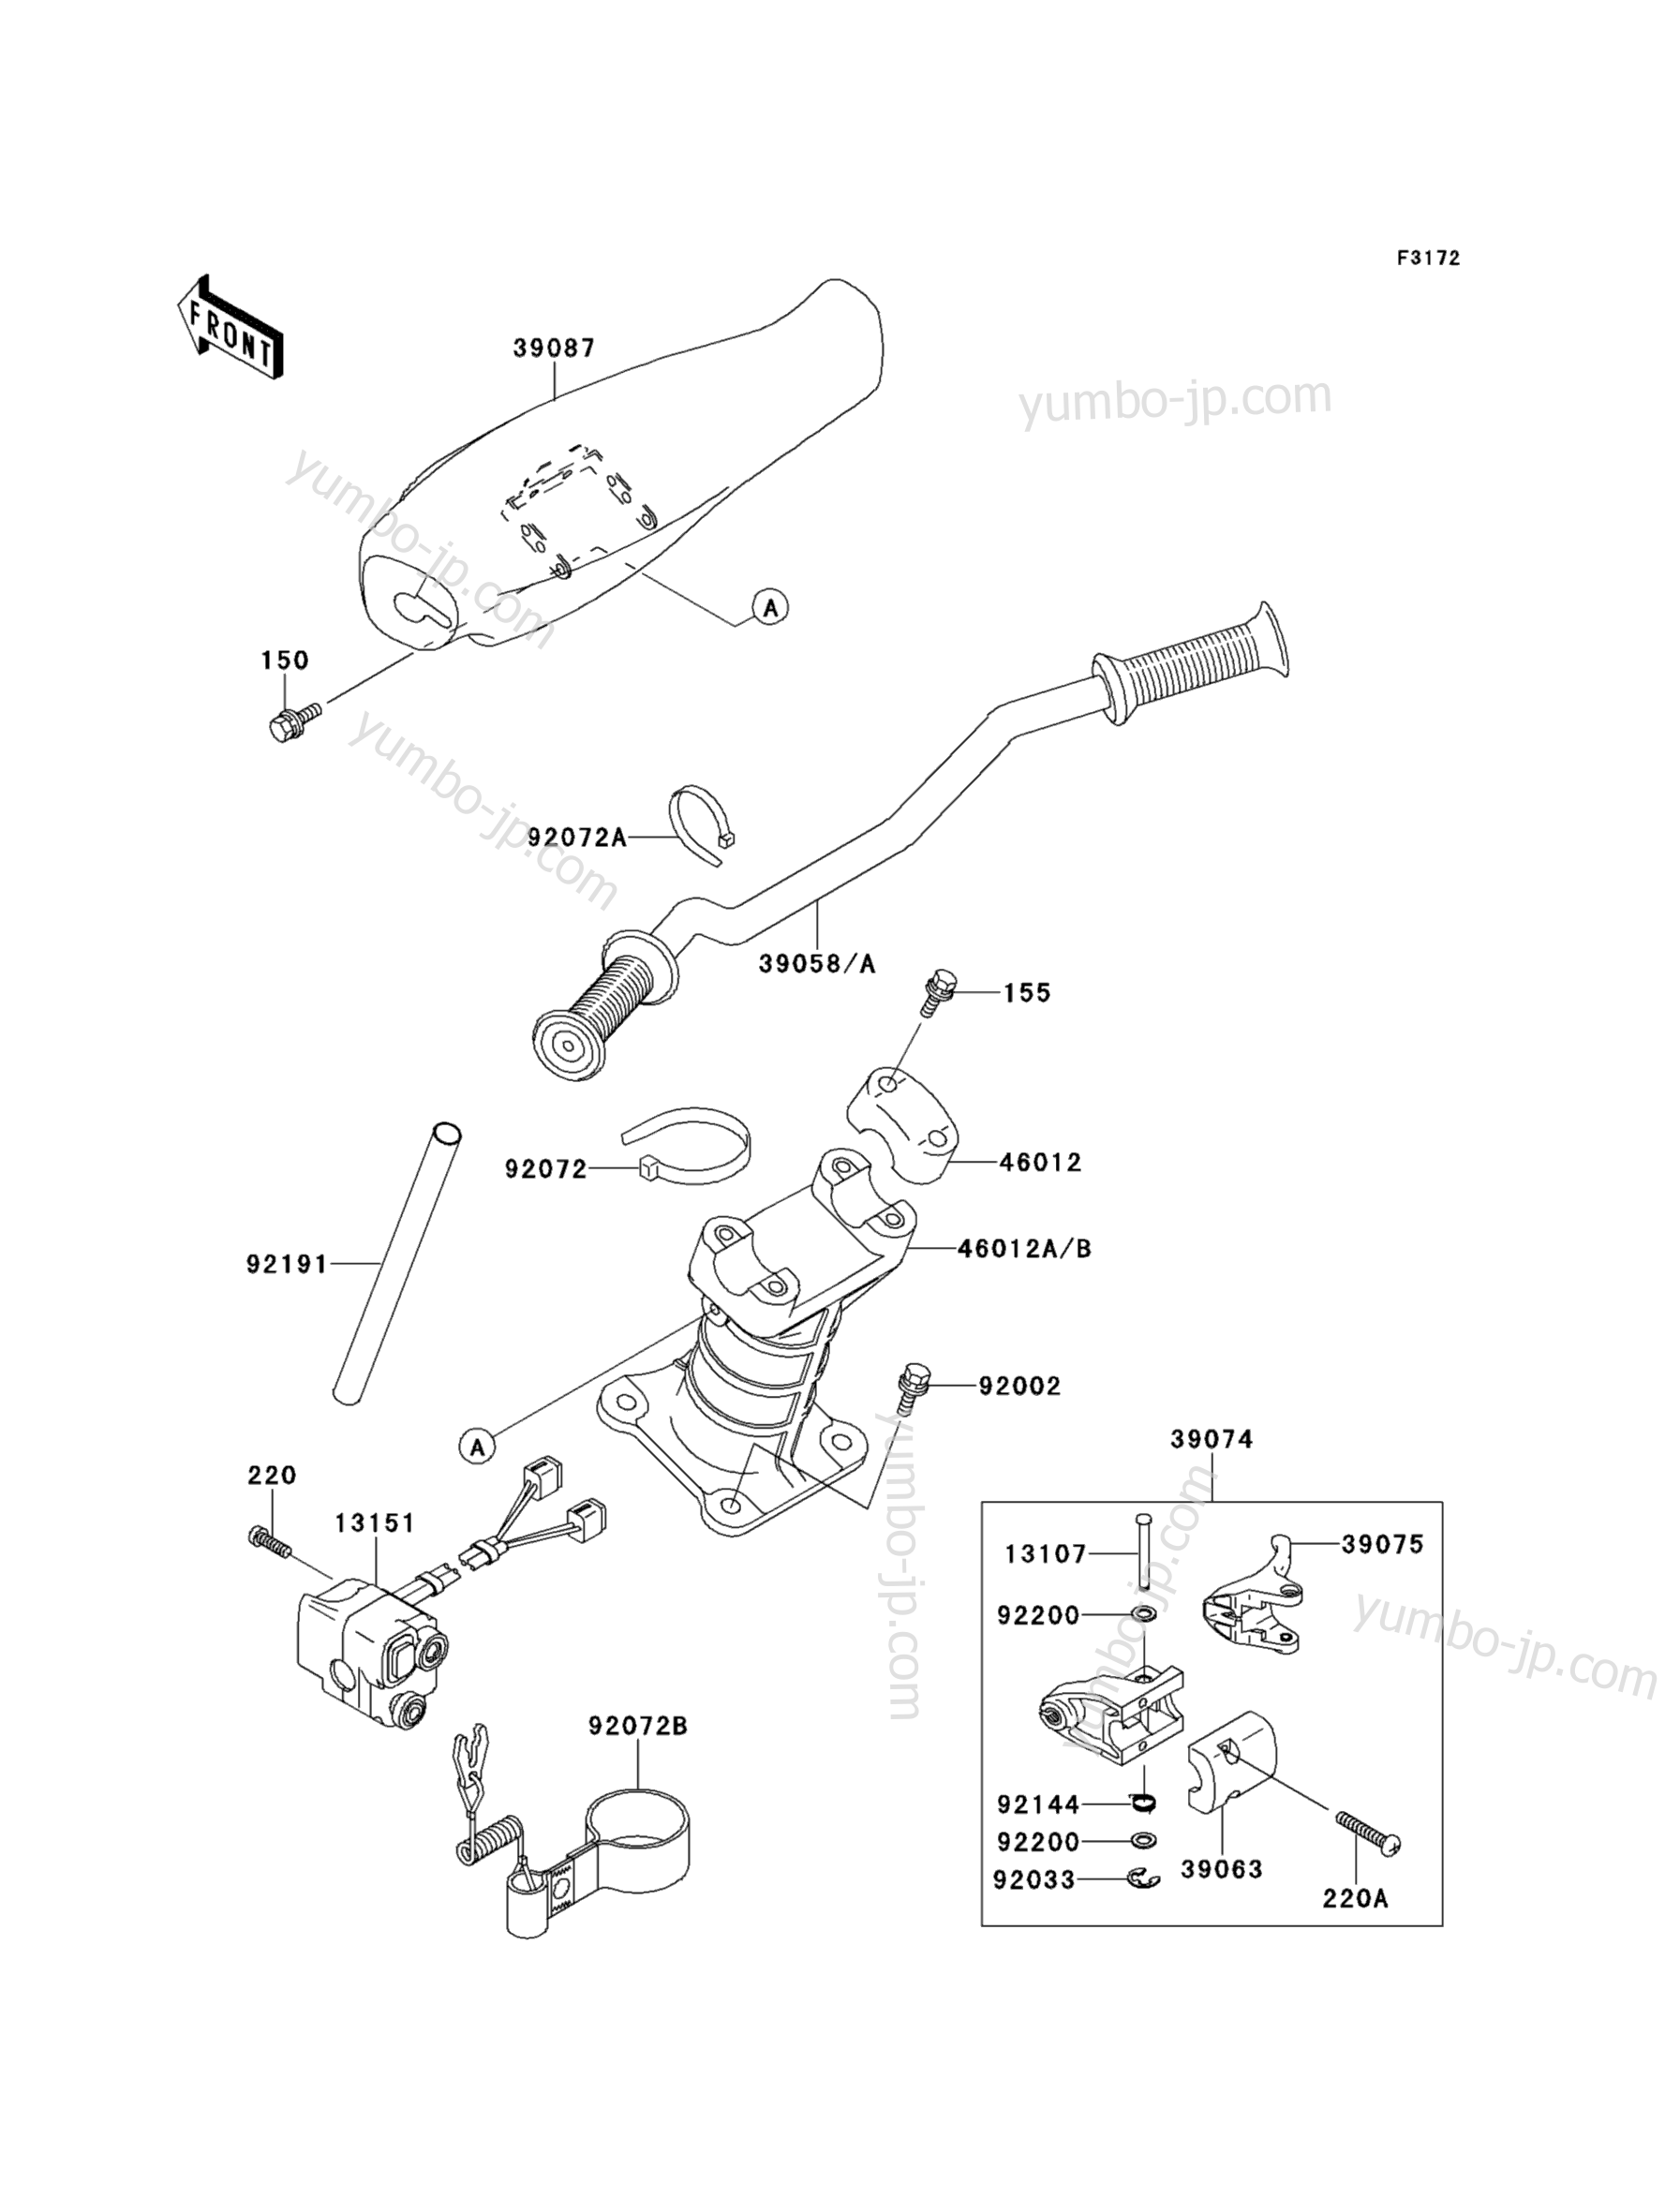 Румпель (рукоятка управления) для гидроциклов KAWASAKI JET SKI 900ZXI (JH900-A1) 1995 г.